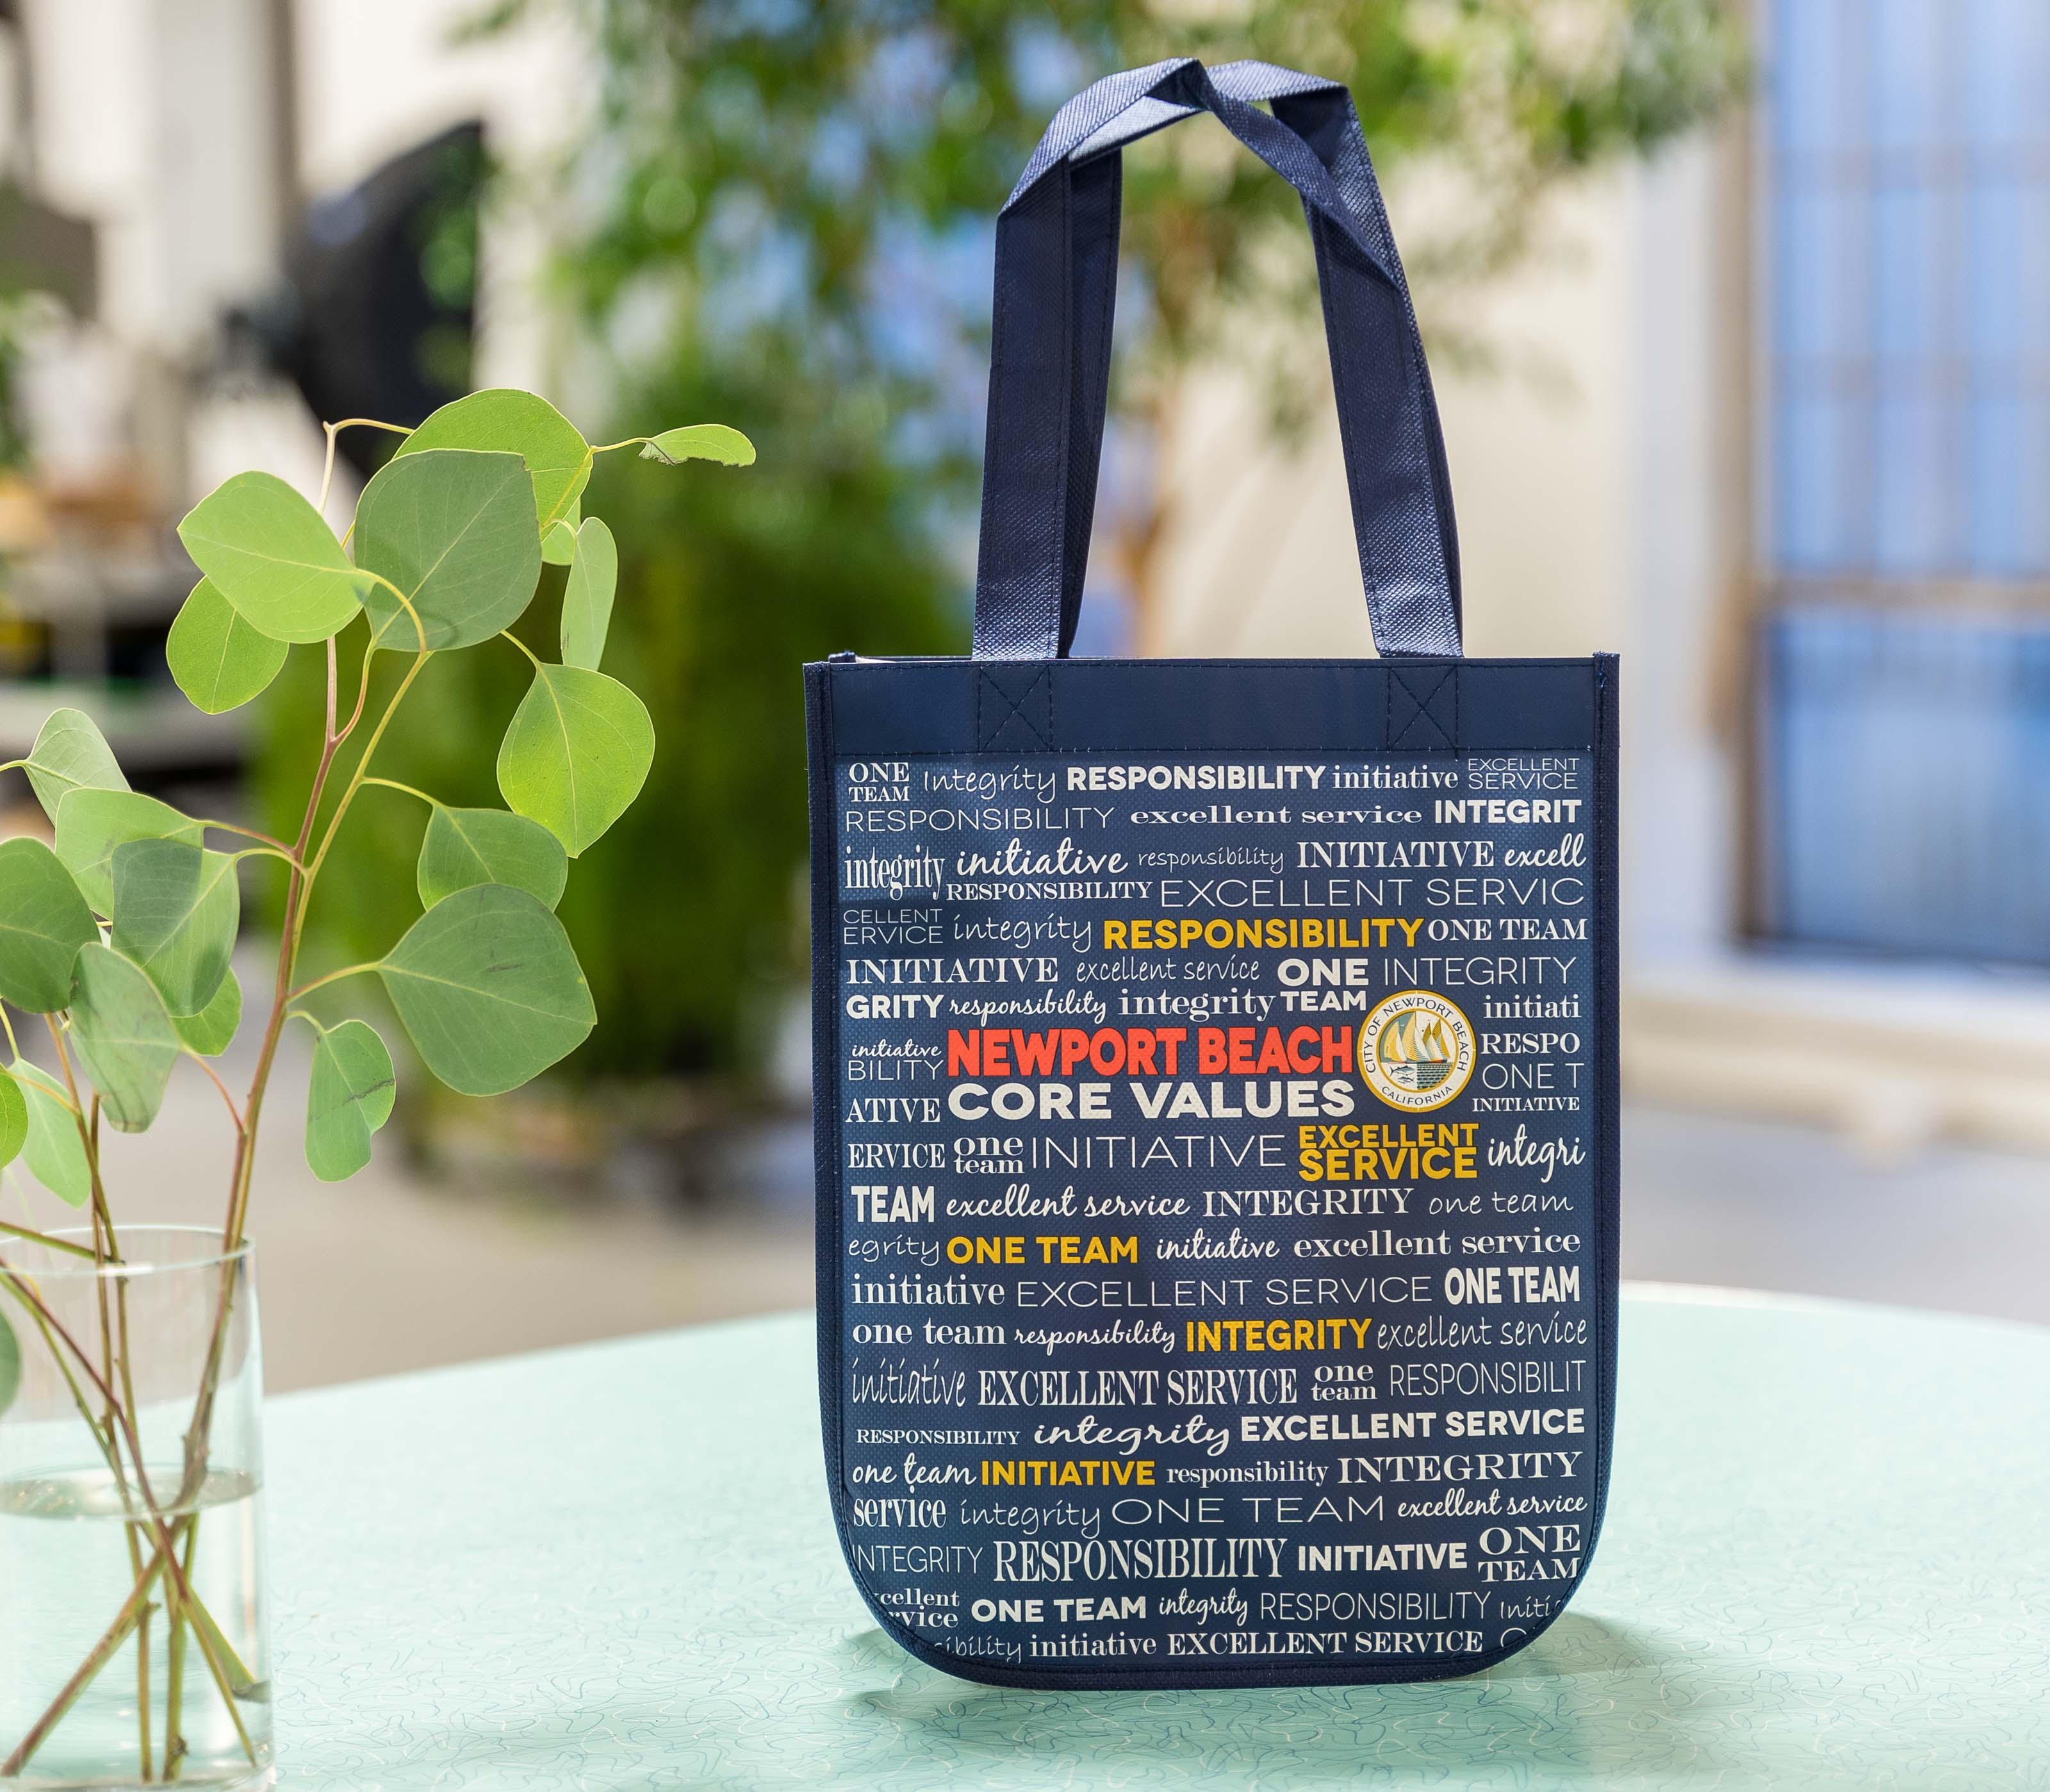 lululemon reusable bag